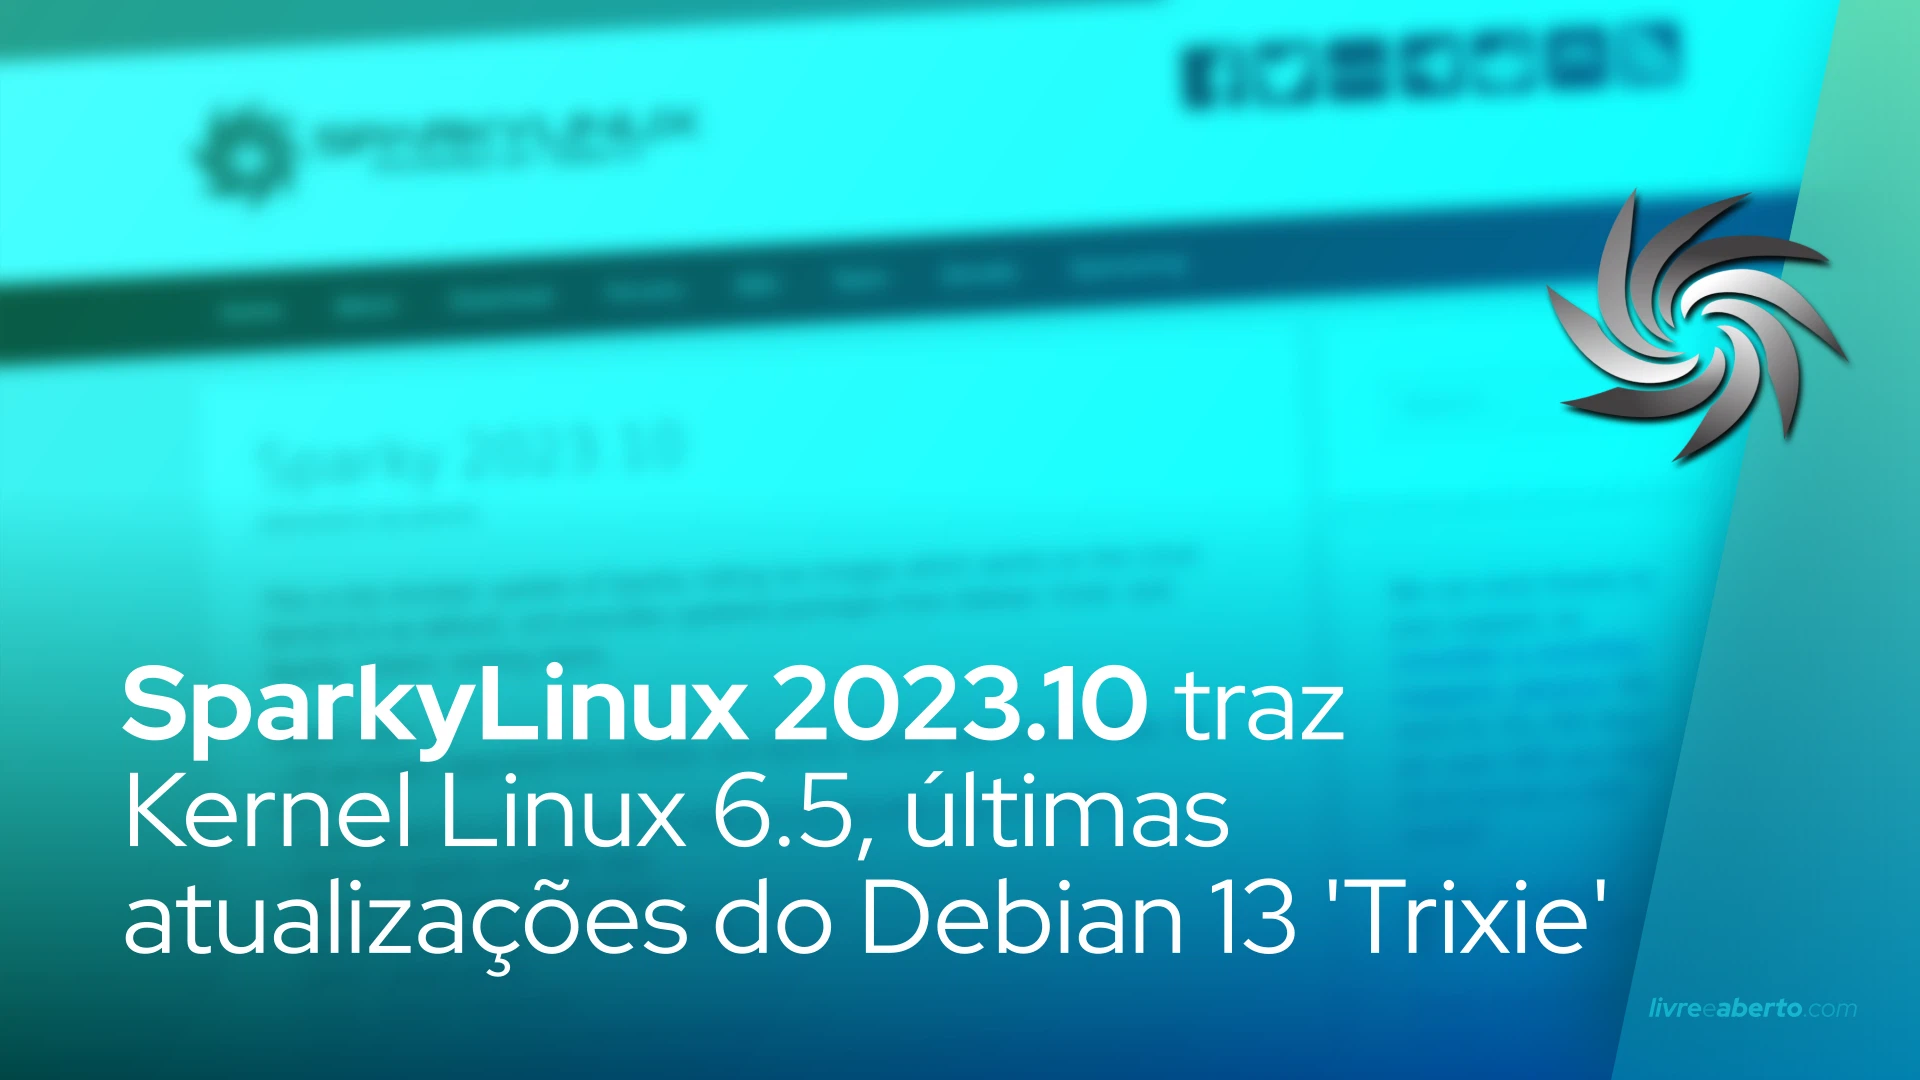 SparkyLinux 2023.10 traz Kernel Linux 6.5, últimas atualizações do Debian 13 'Trixie'